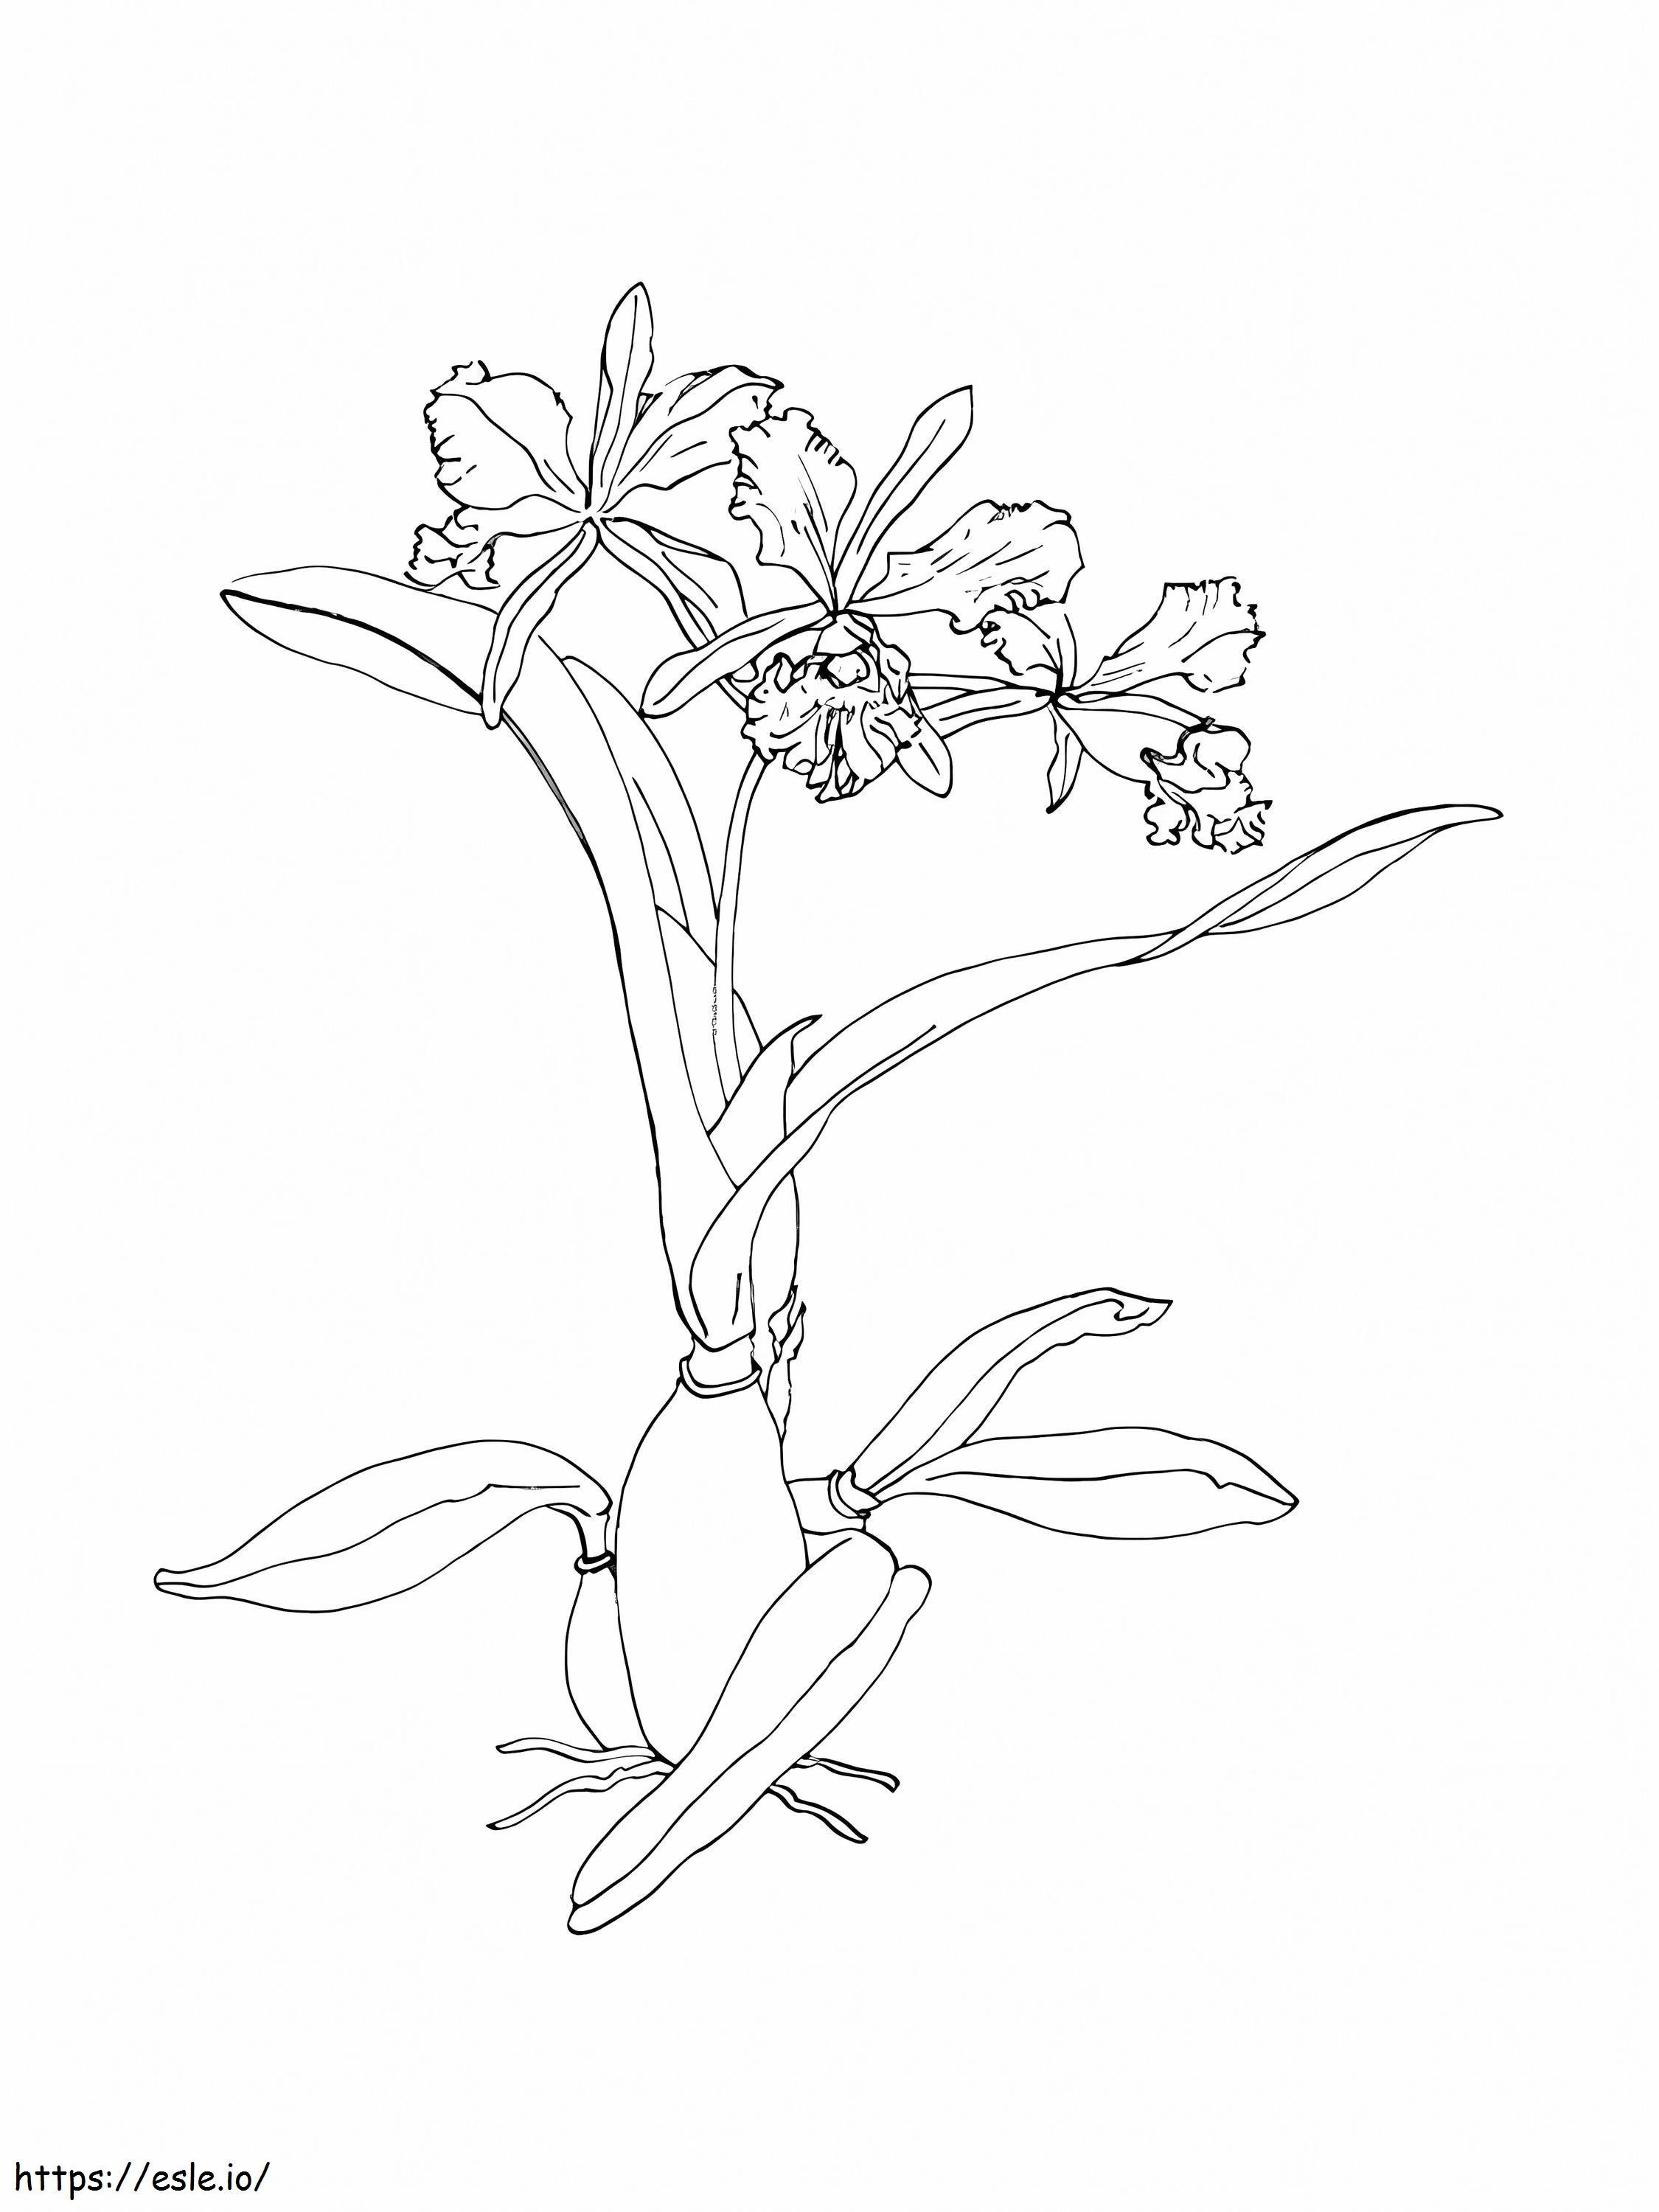 Bedava Orkide Çiçeği boyama